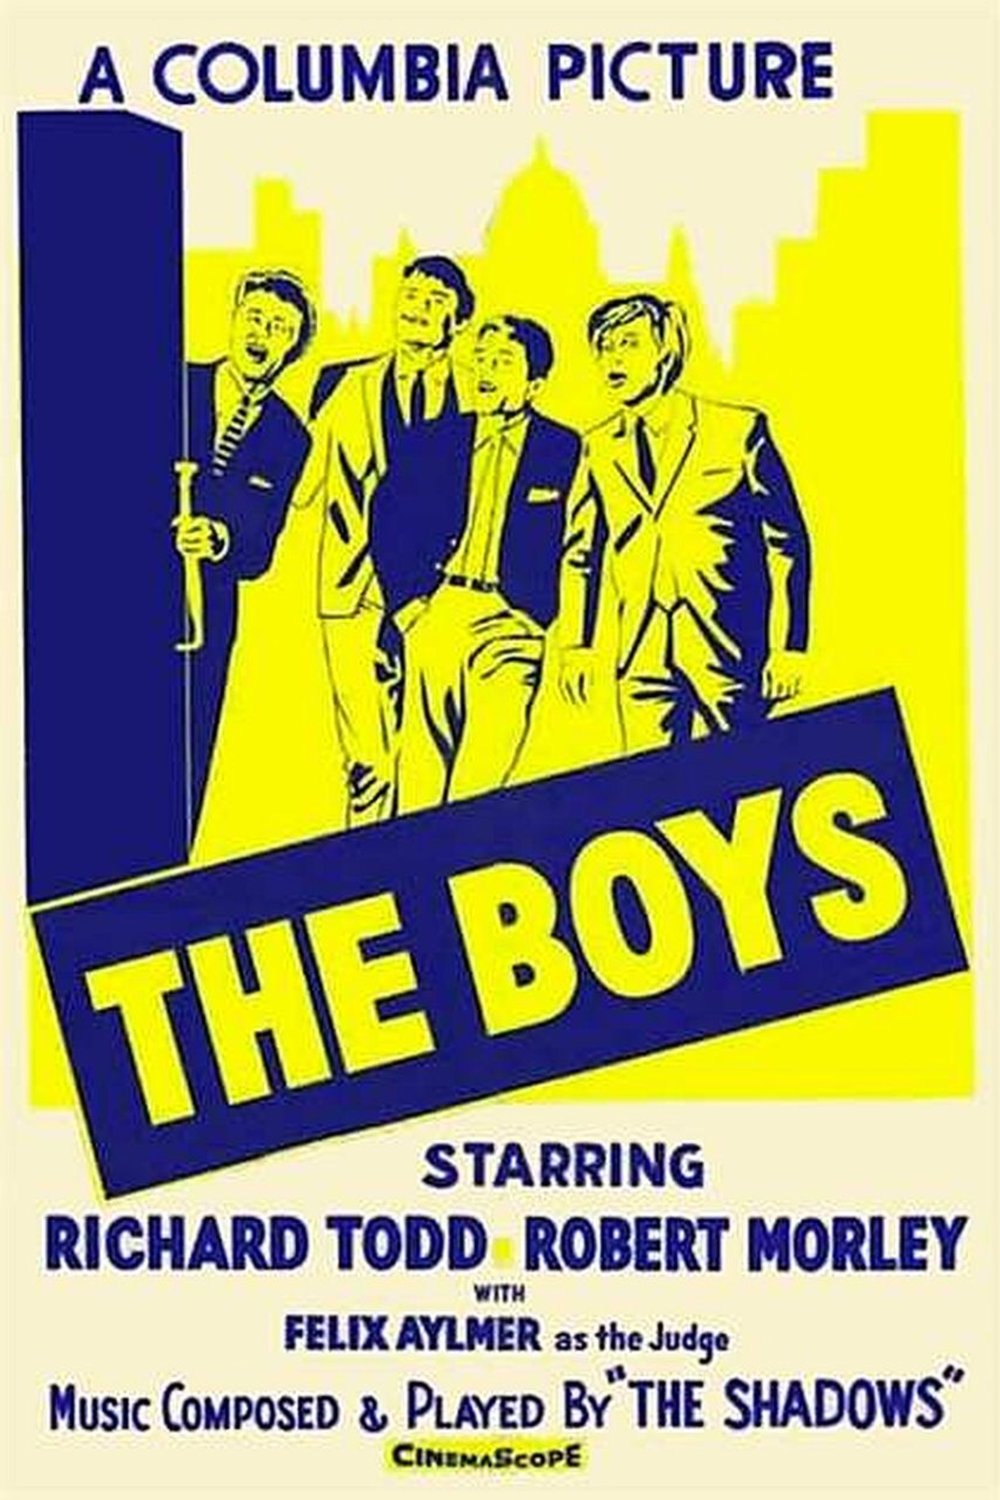 L'affiche du film The Boys